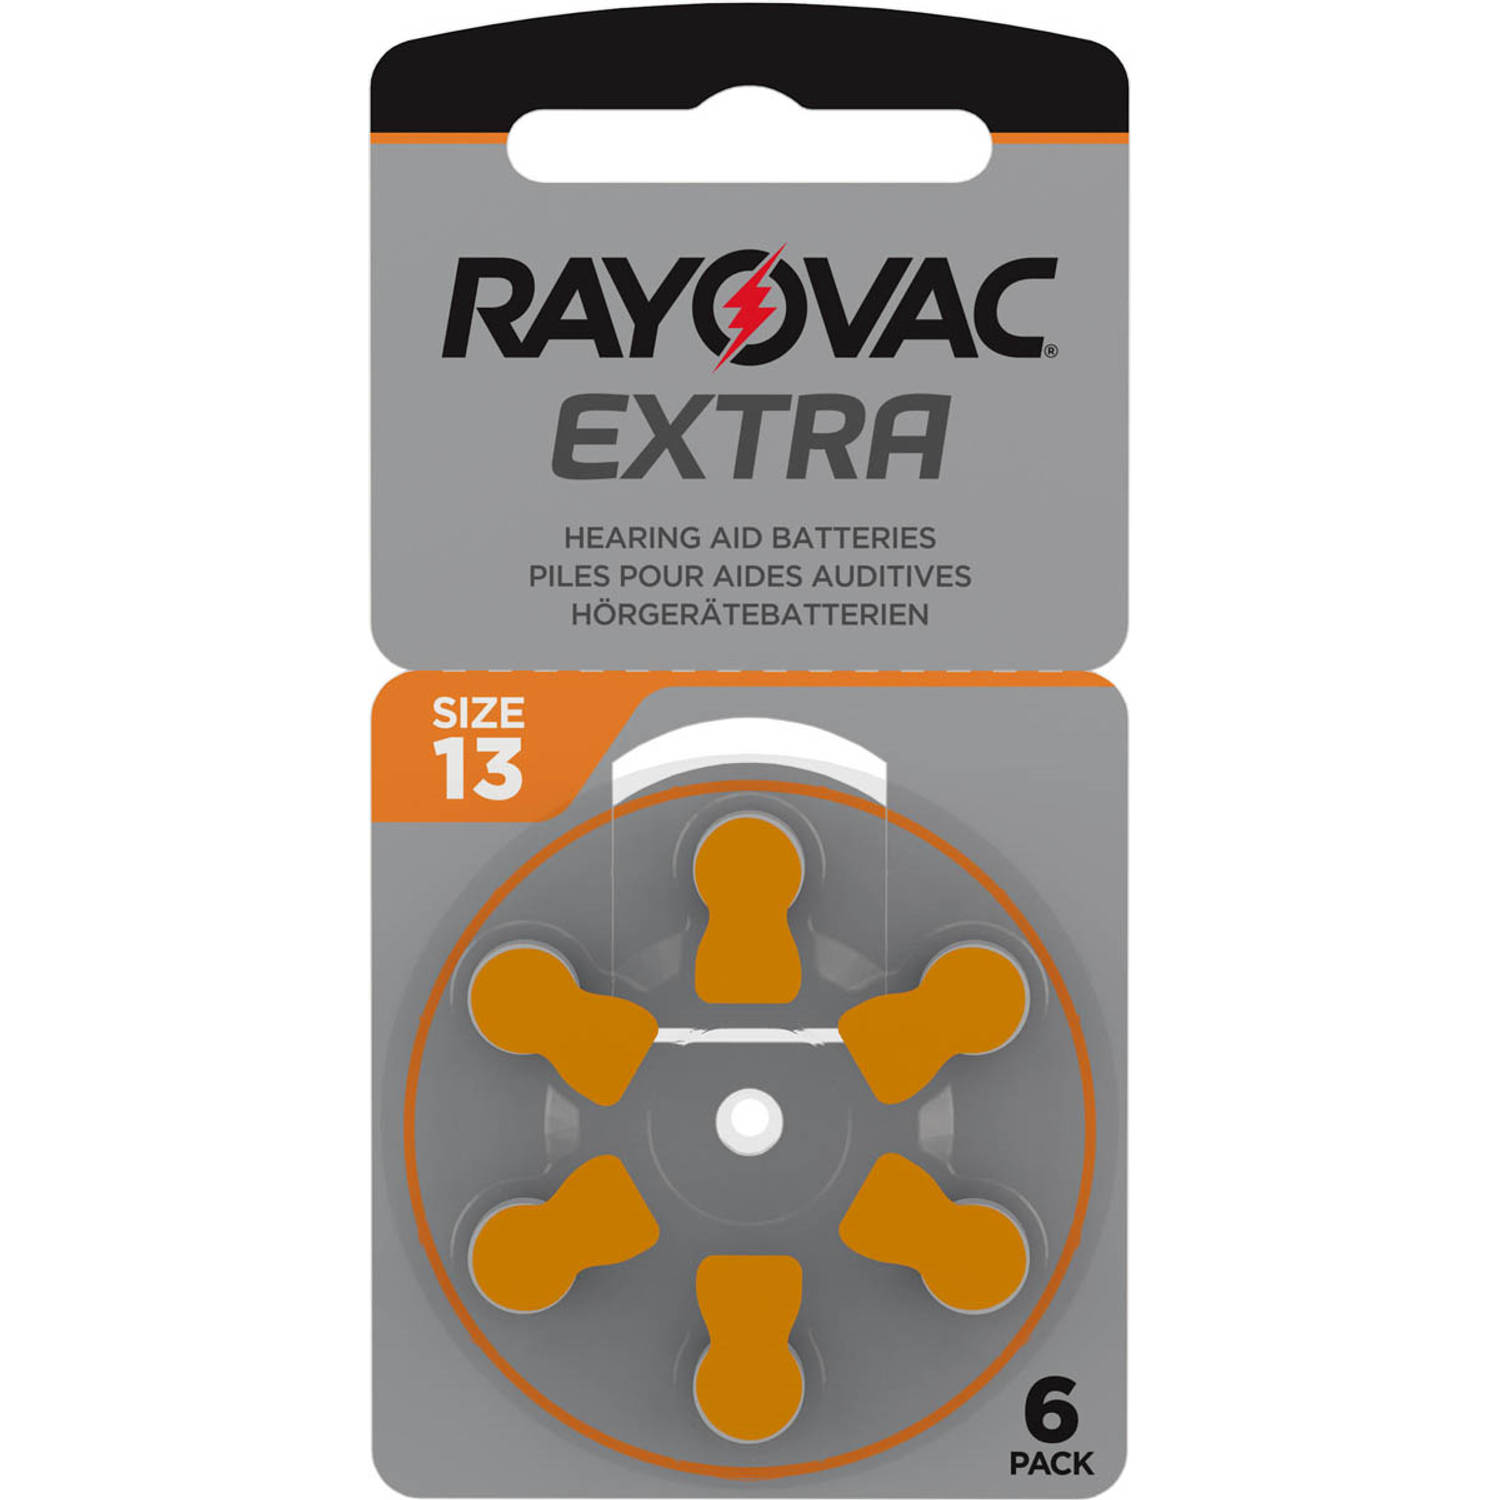 Rayovac Extra Hoorbatterijen 13 Oranje 60 pack